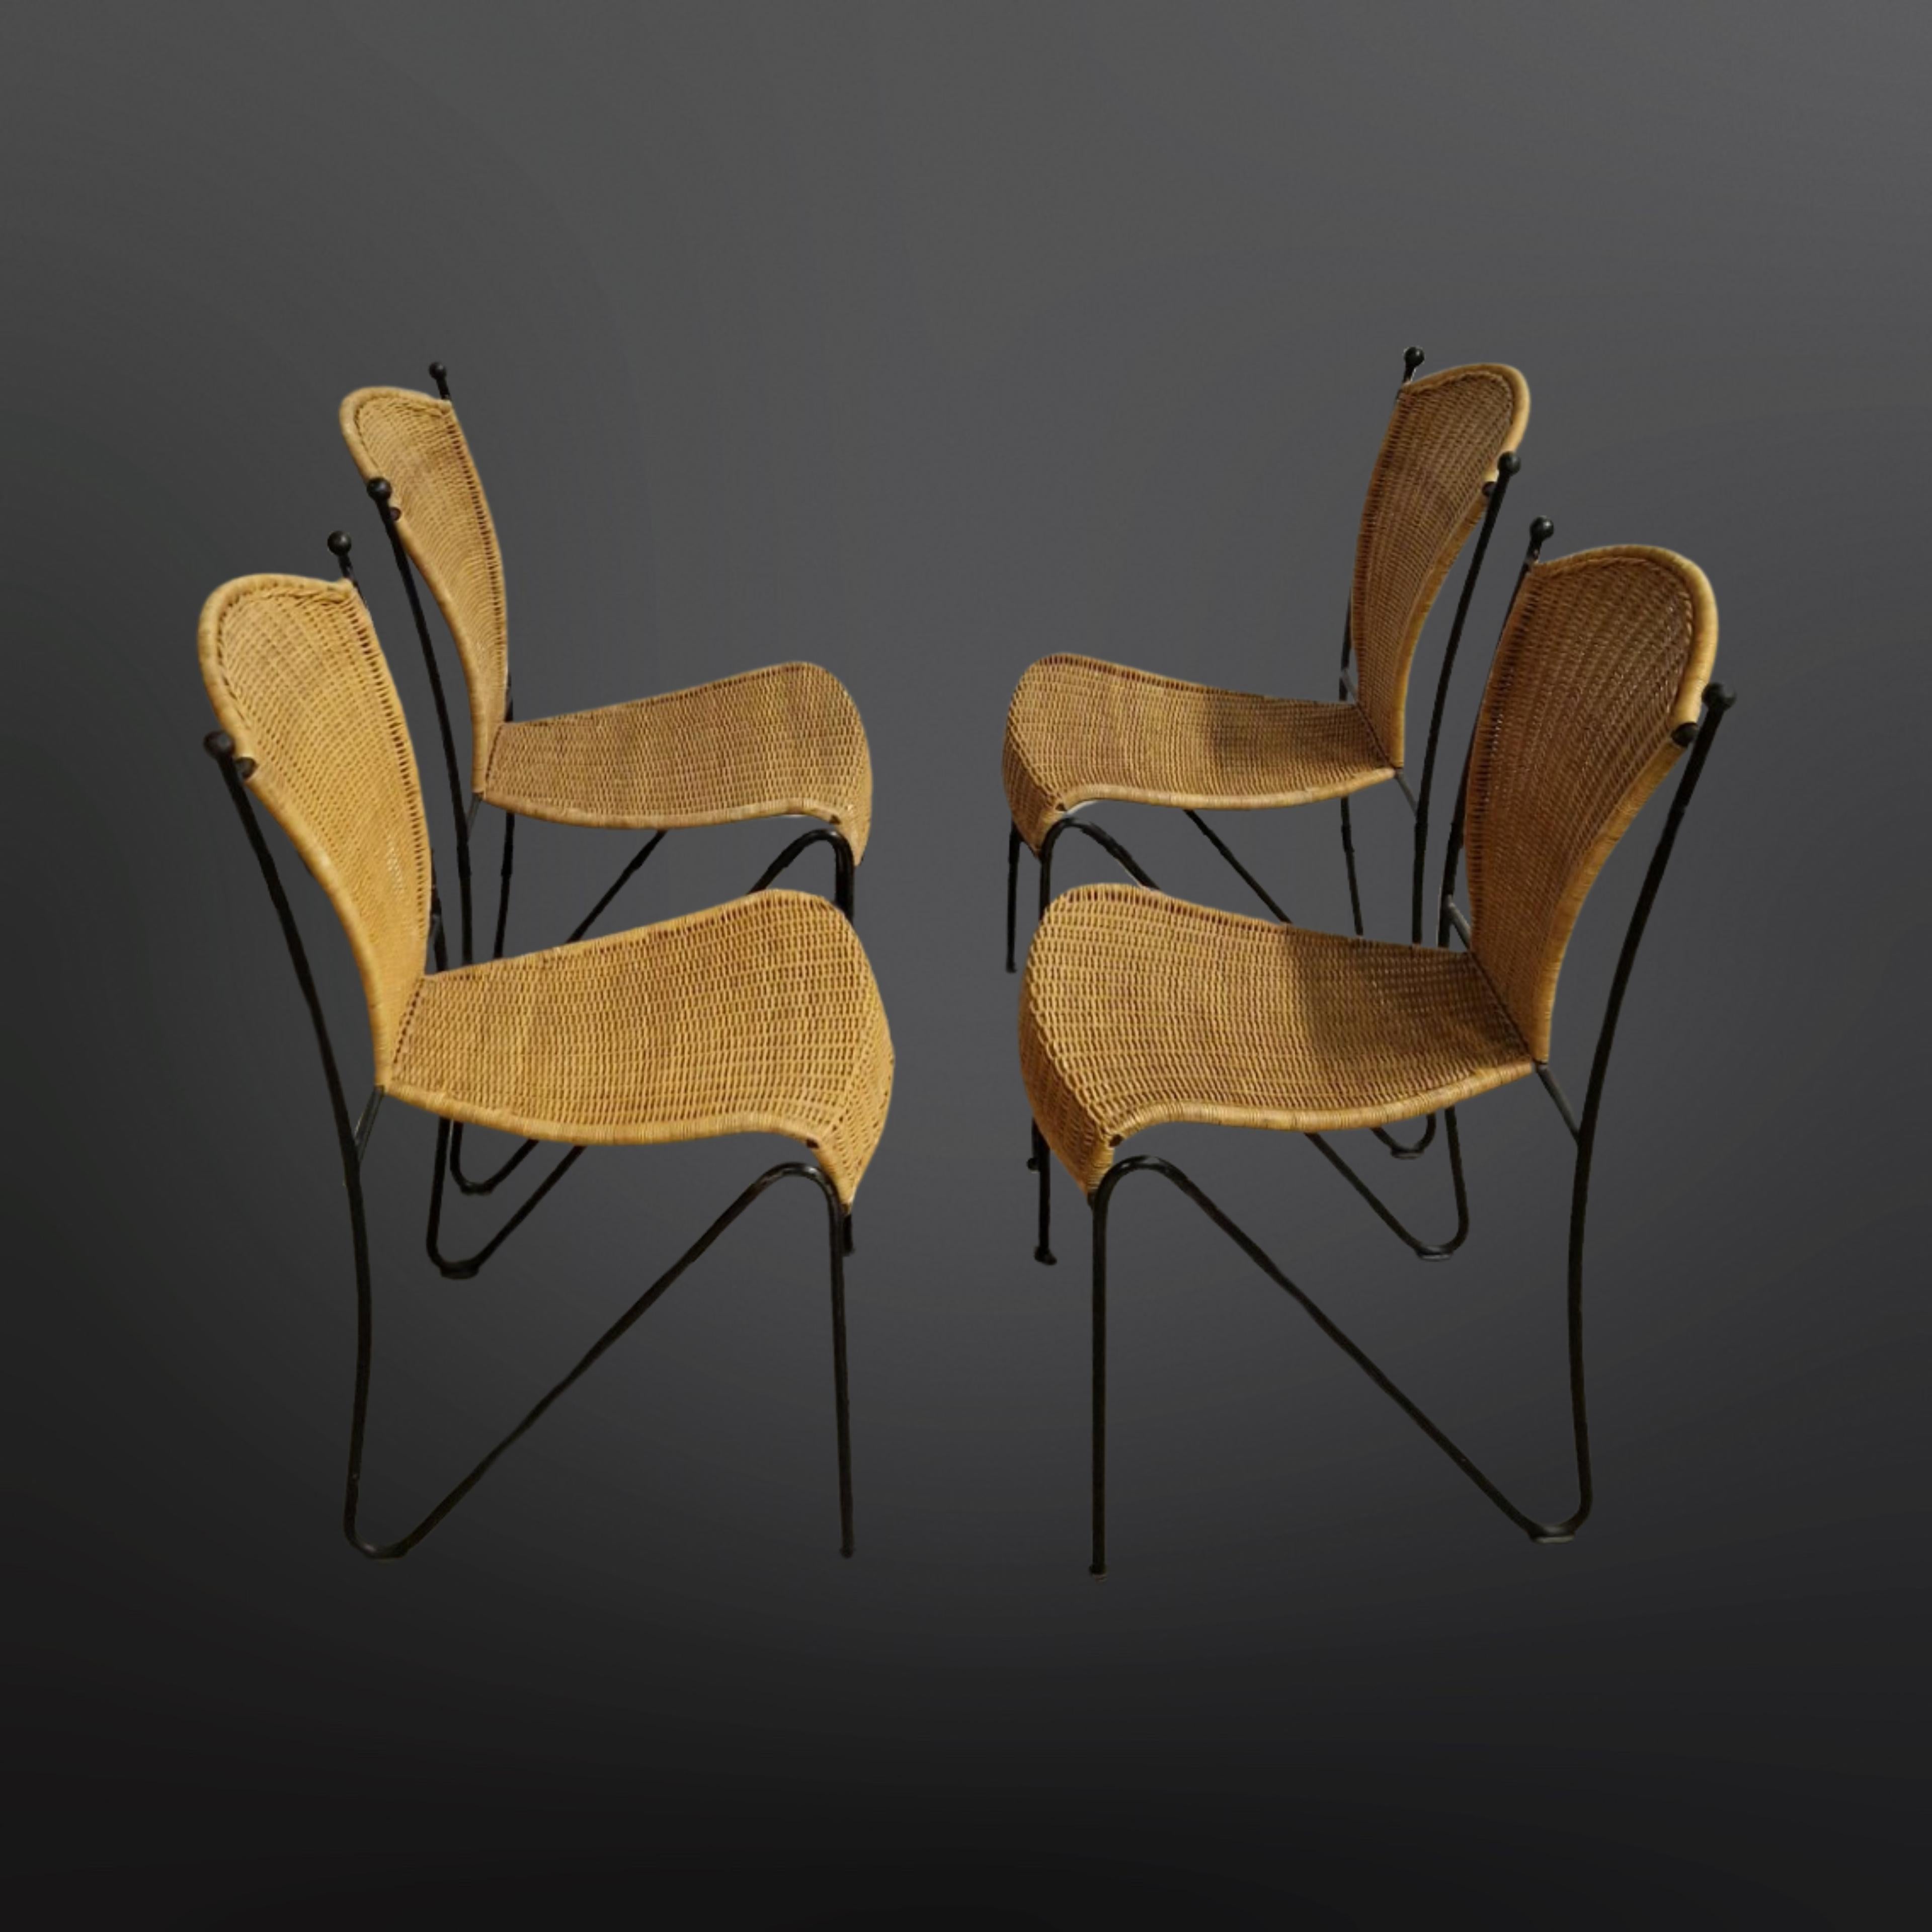 Satz von 4 französischen Esszimmerstühlen. Die Gestelle sind aus massivem Schmiedeeisen und die Sitze aus Korbgeflecht gefertigt. Handgefertigt in den 1960er Jahren und immer noch in einem erstaunlichen Zustand, schwere Qualität gemacht Stücke.